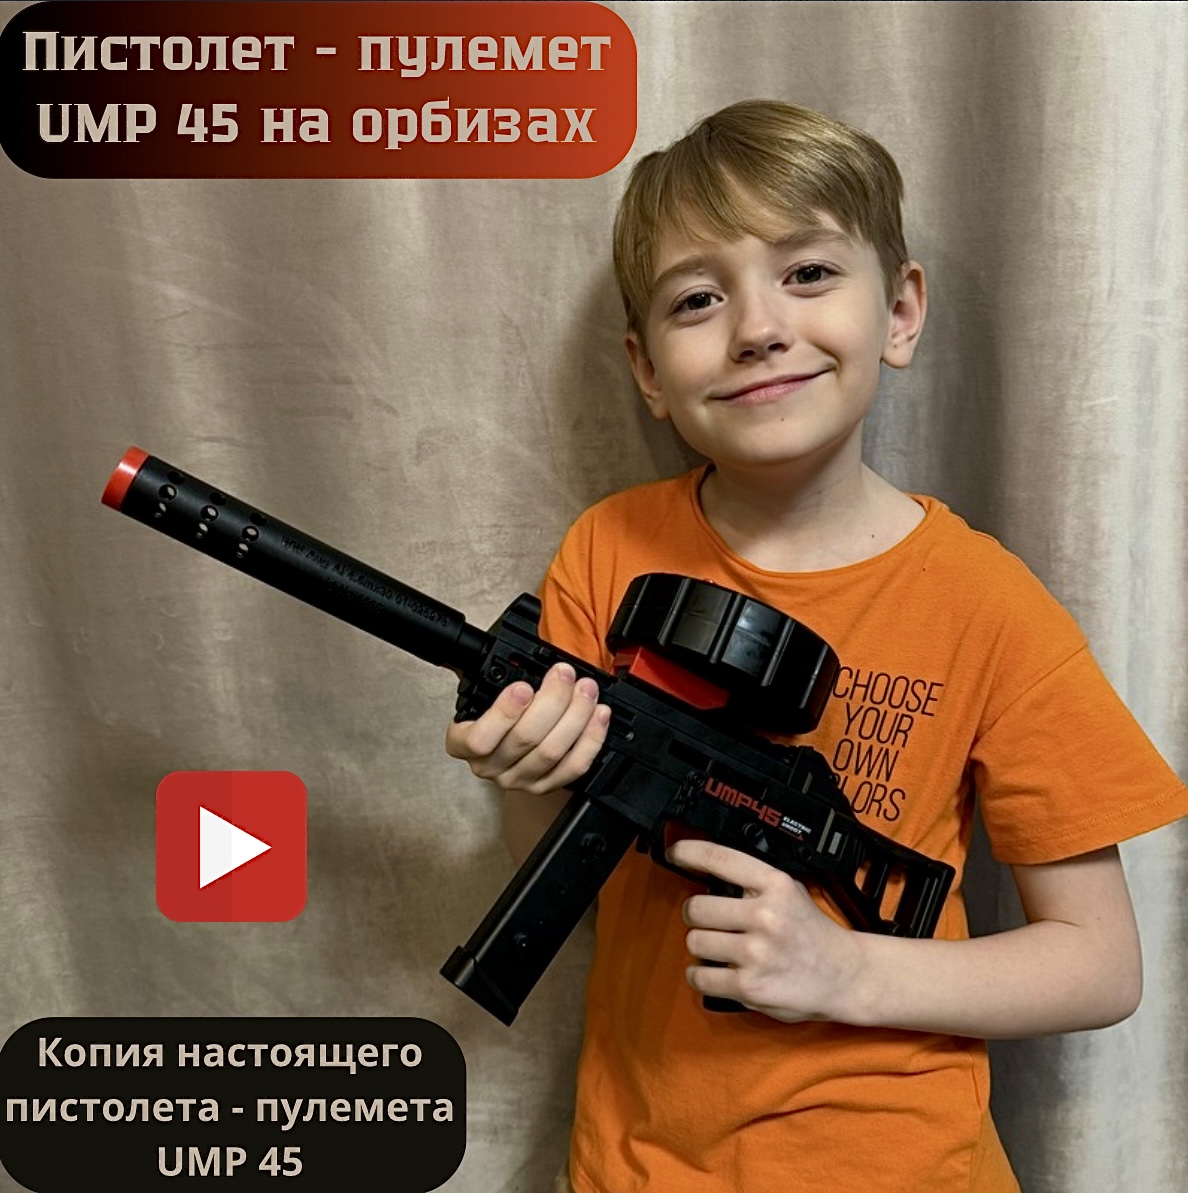 Пистолет-пулемет игровой RanCap UMP 45 с орбизами (игрушка)